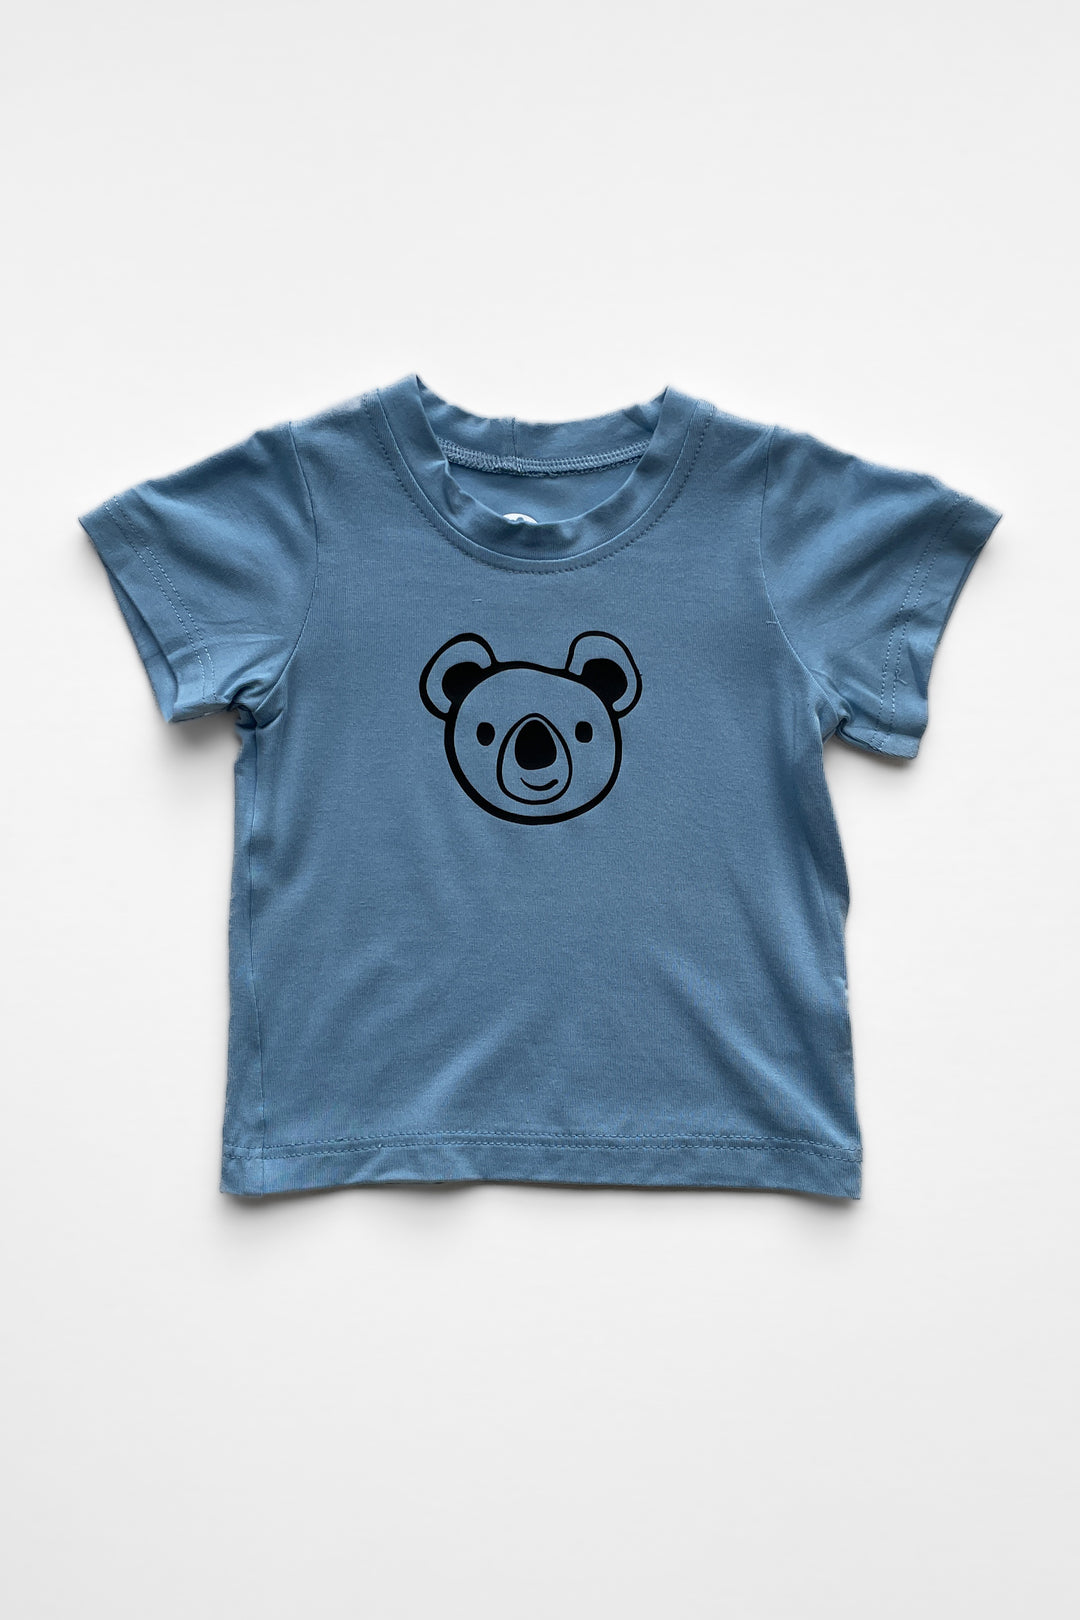 Baby t-shirt - Conrad the Koala - Blue